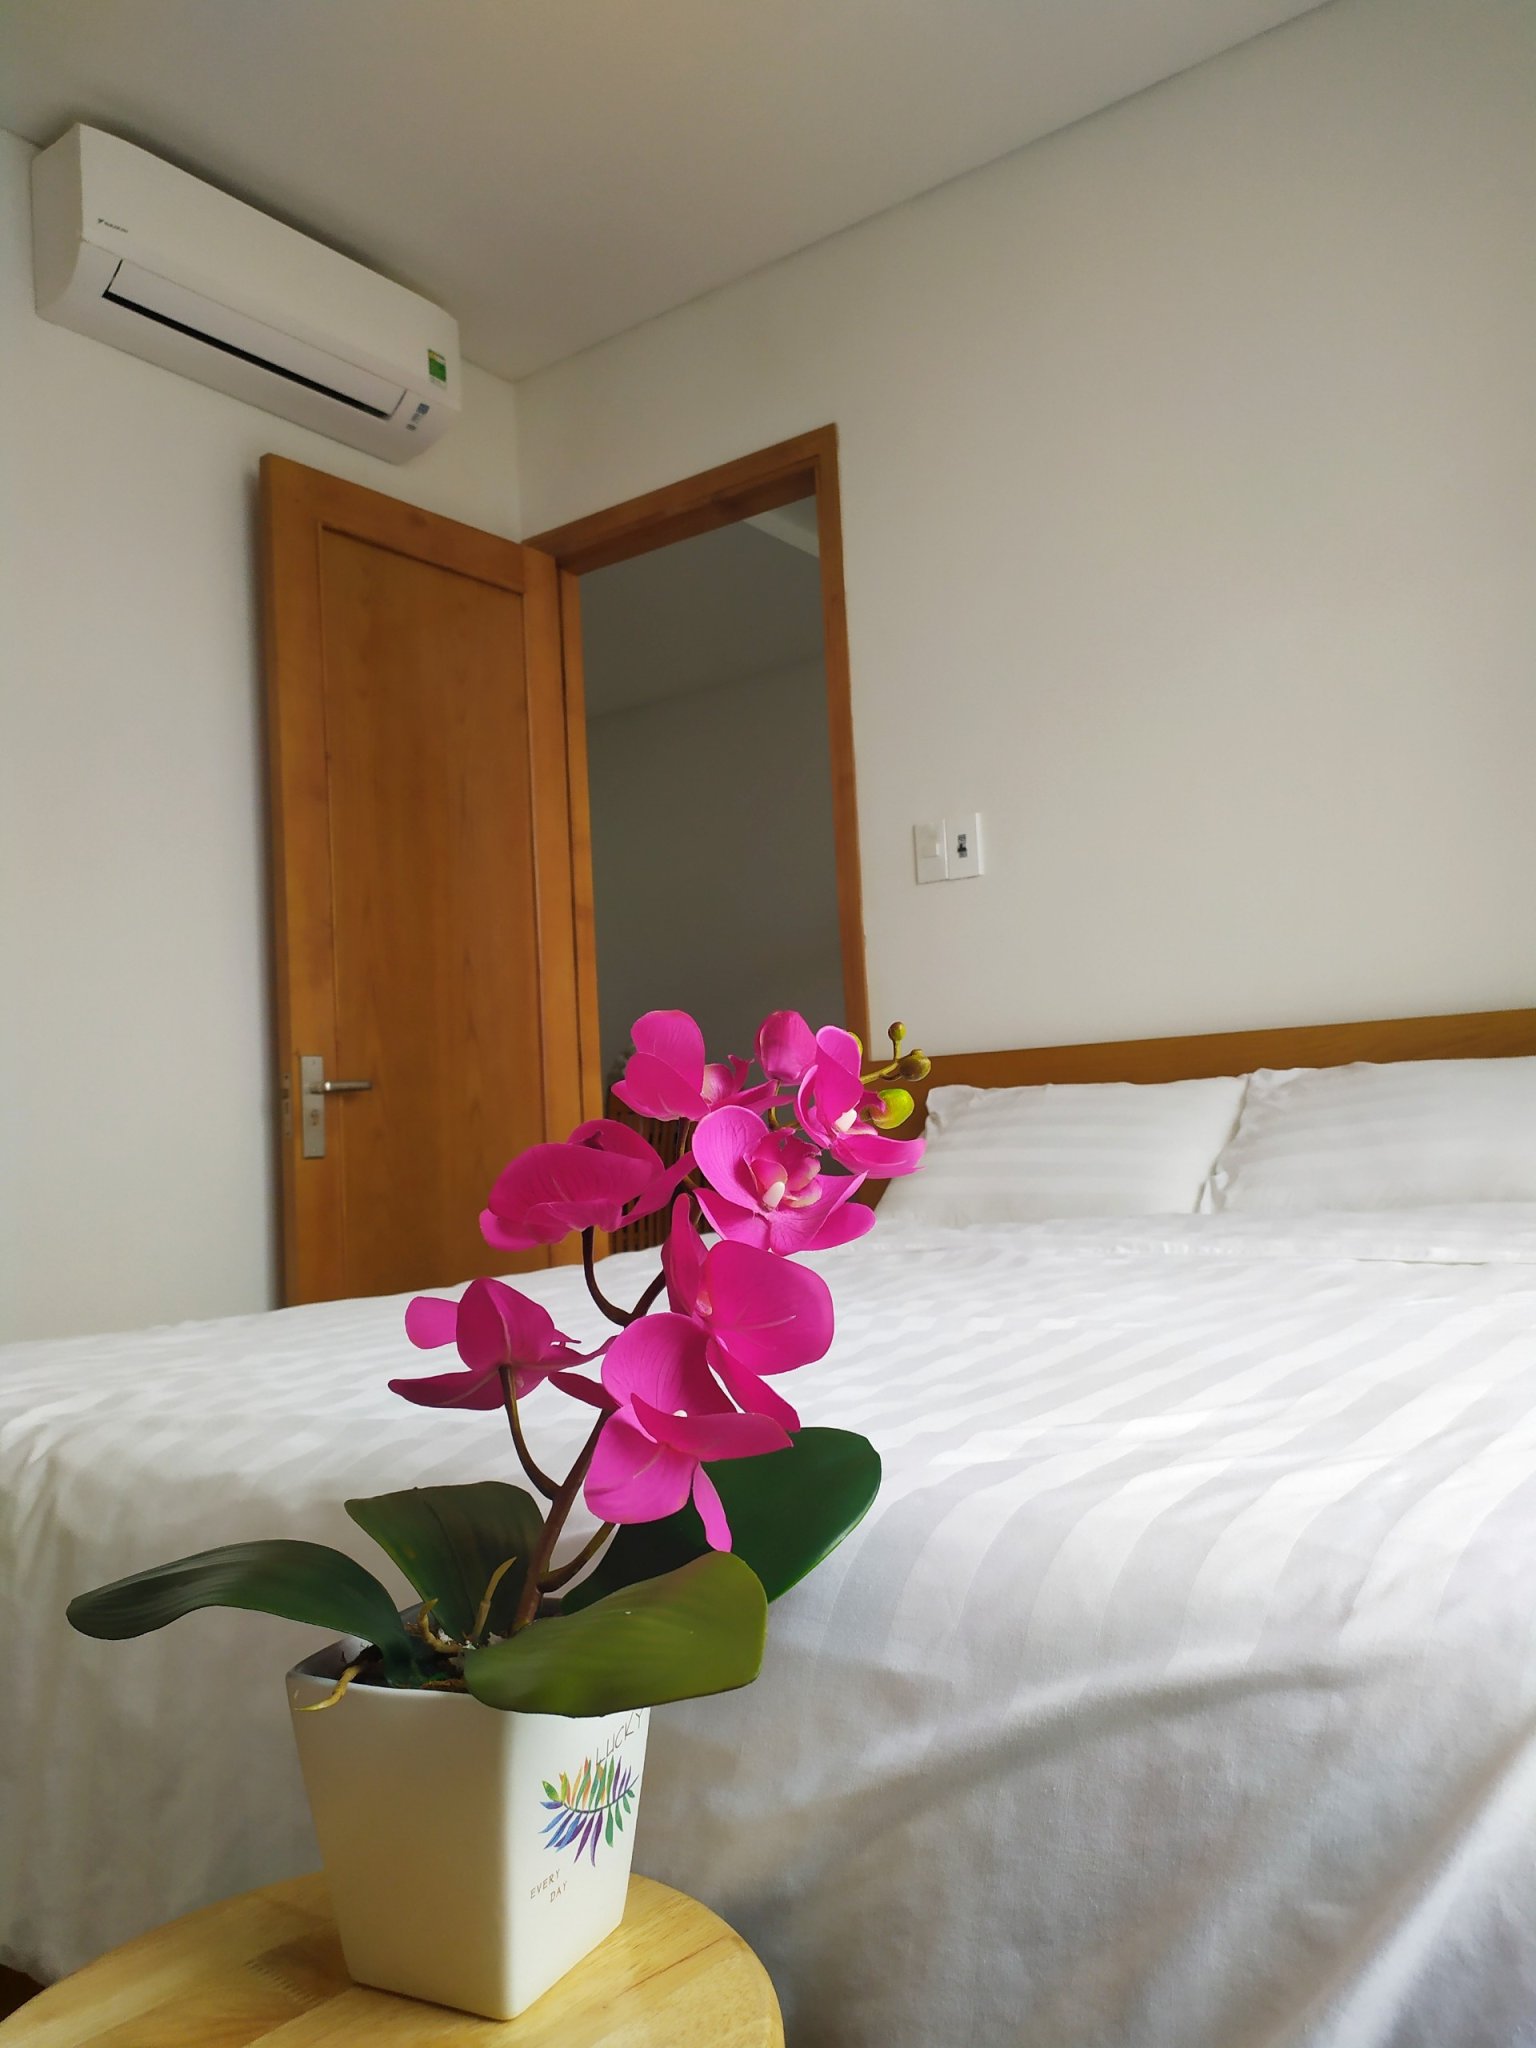 Căn hộ gần biển Phạm Văn Đồng, đầy đủ nội thất,giá rẻ nhất.Lh ngay:0983.750.220